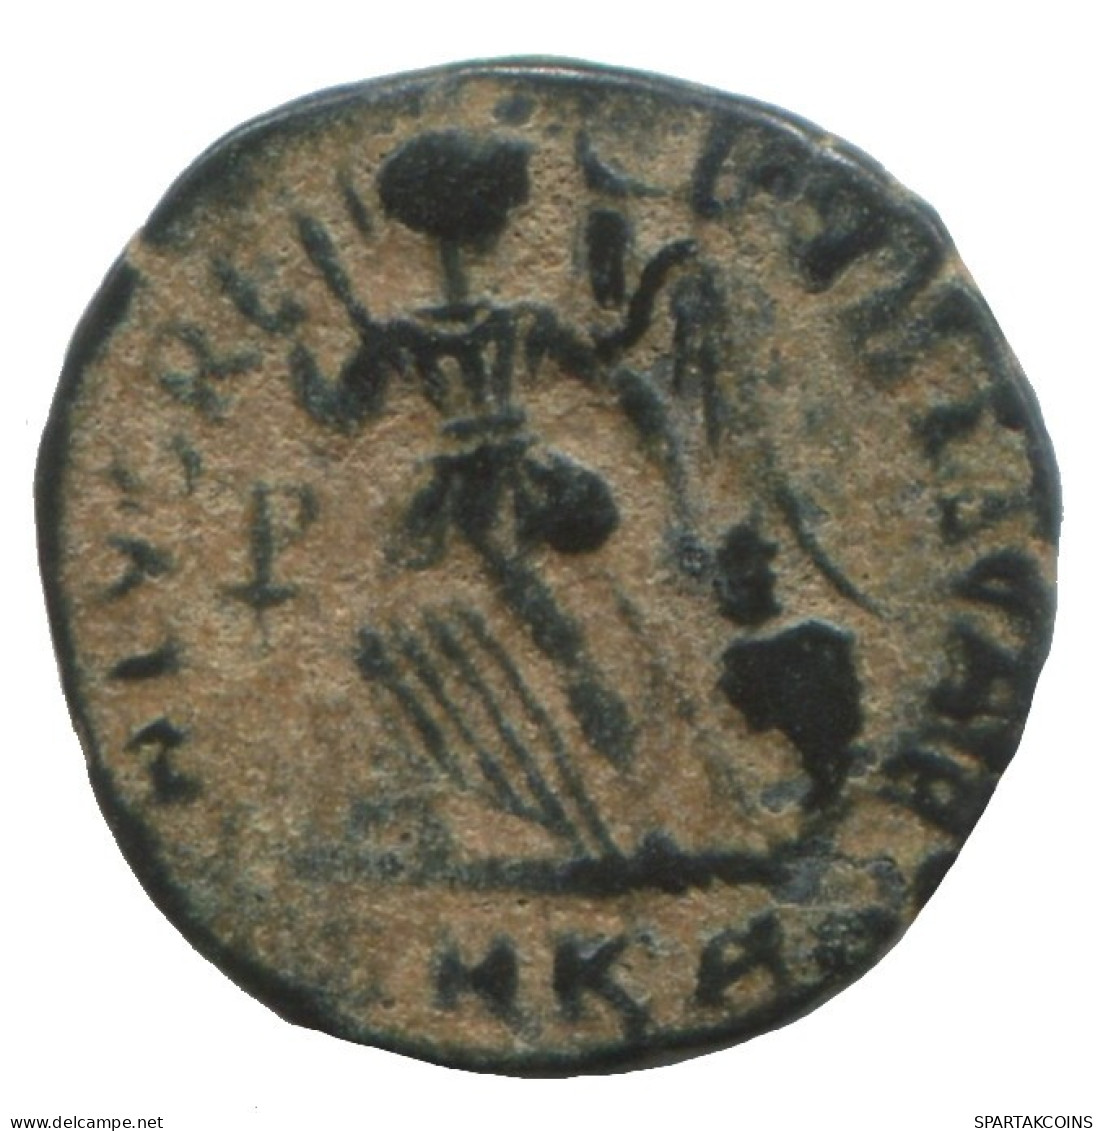 VALENTINIAN II CYZICUS SMKA AD375-392 SALVS REI-PVBLICAE 0.9g/14mm #ANN1333.9.E.A - La Fin De L'Empire (363-476)